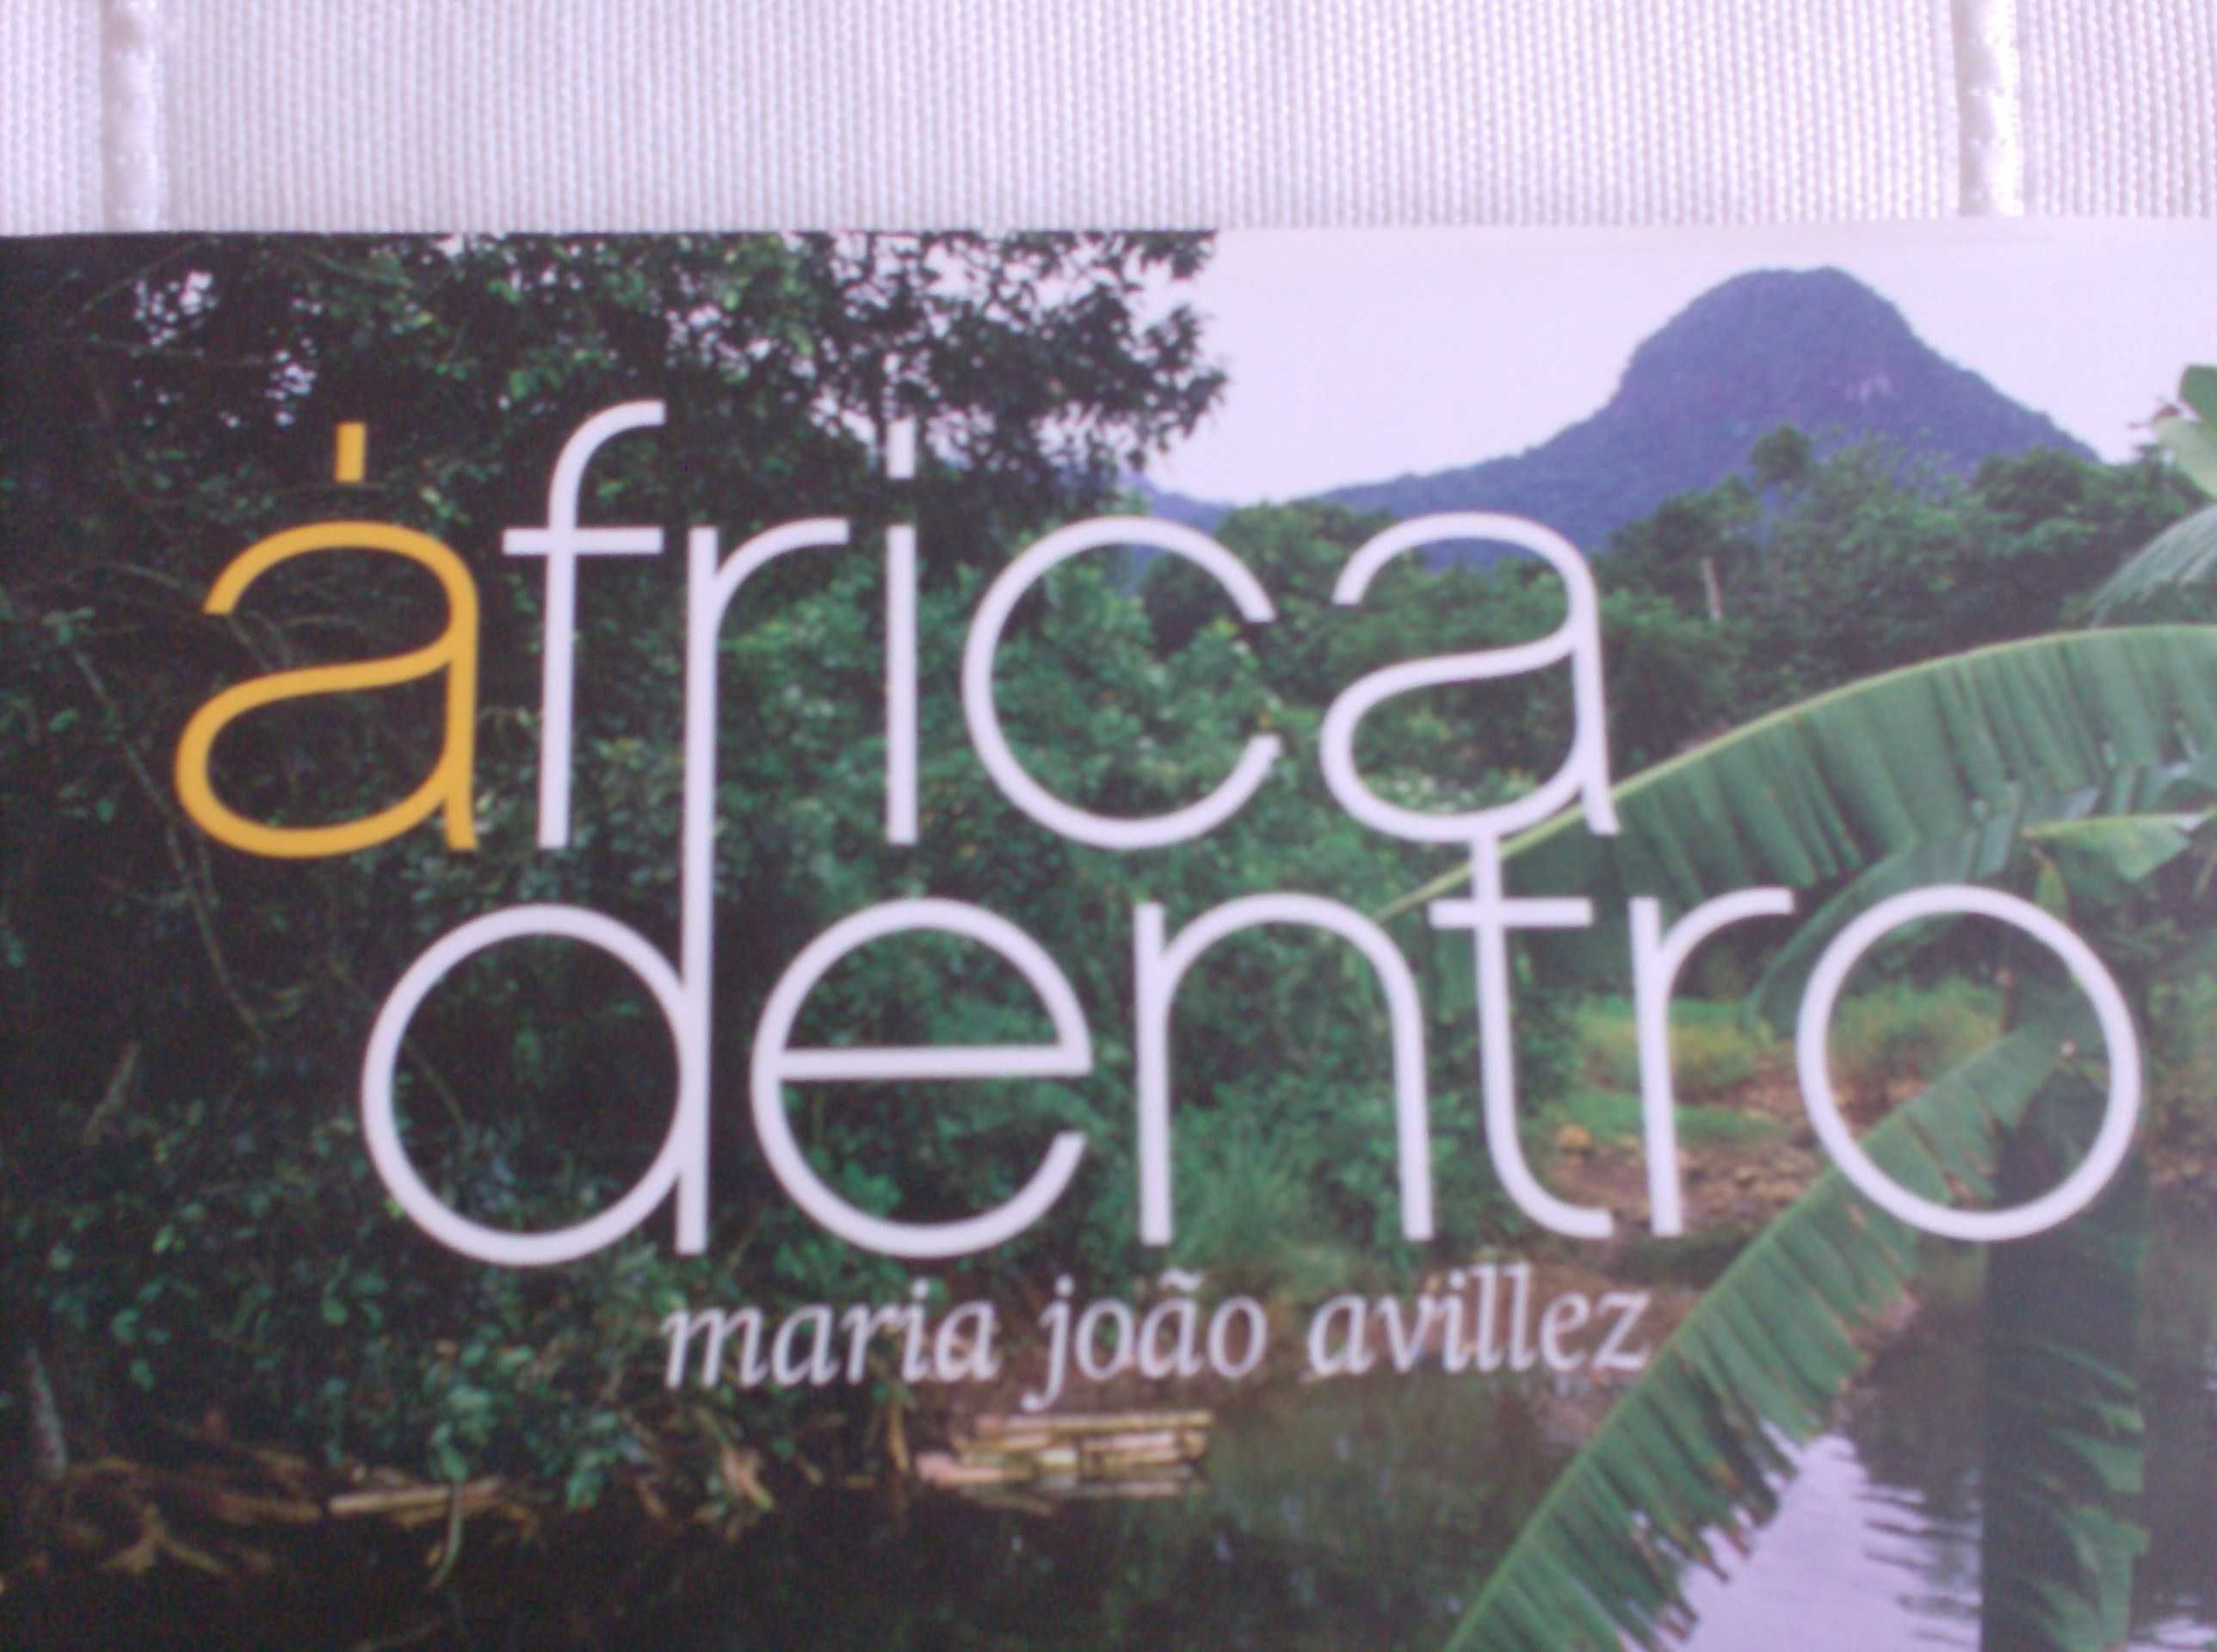 Livro "África dentro" de Maria João Avillez, novo